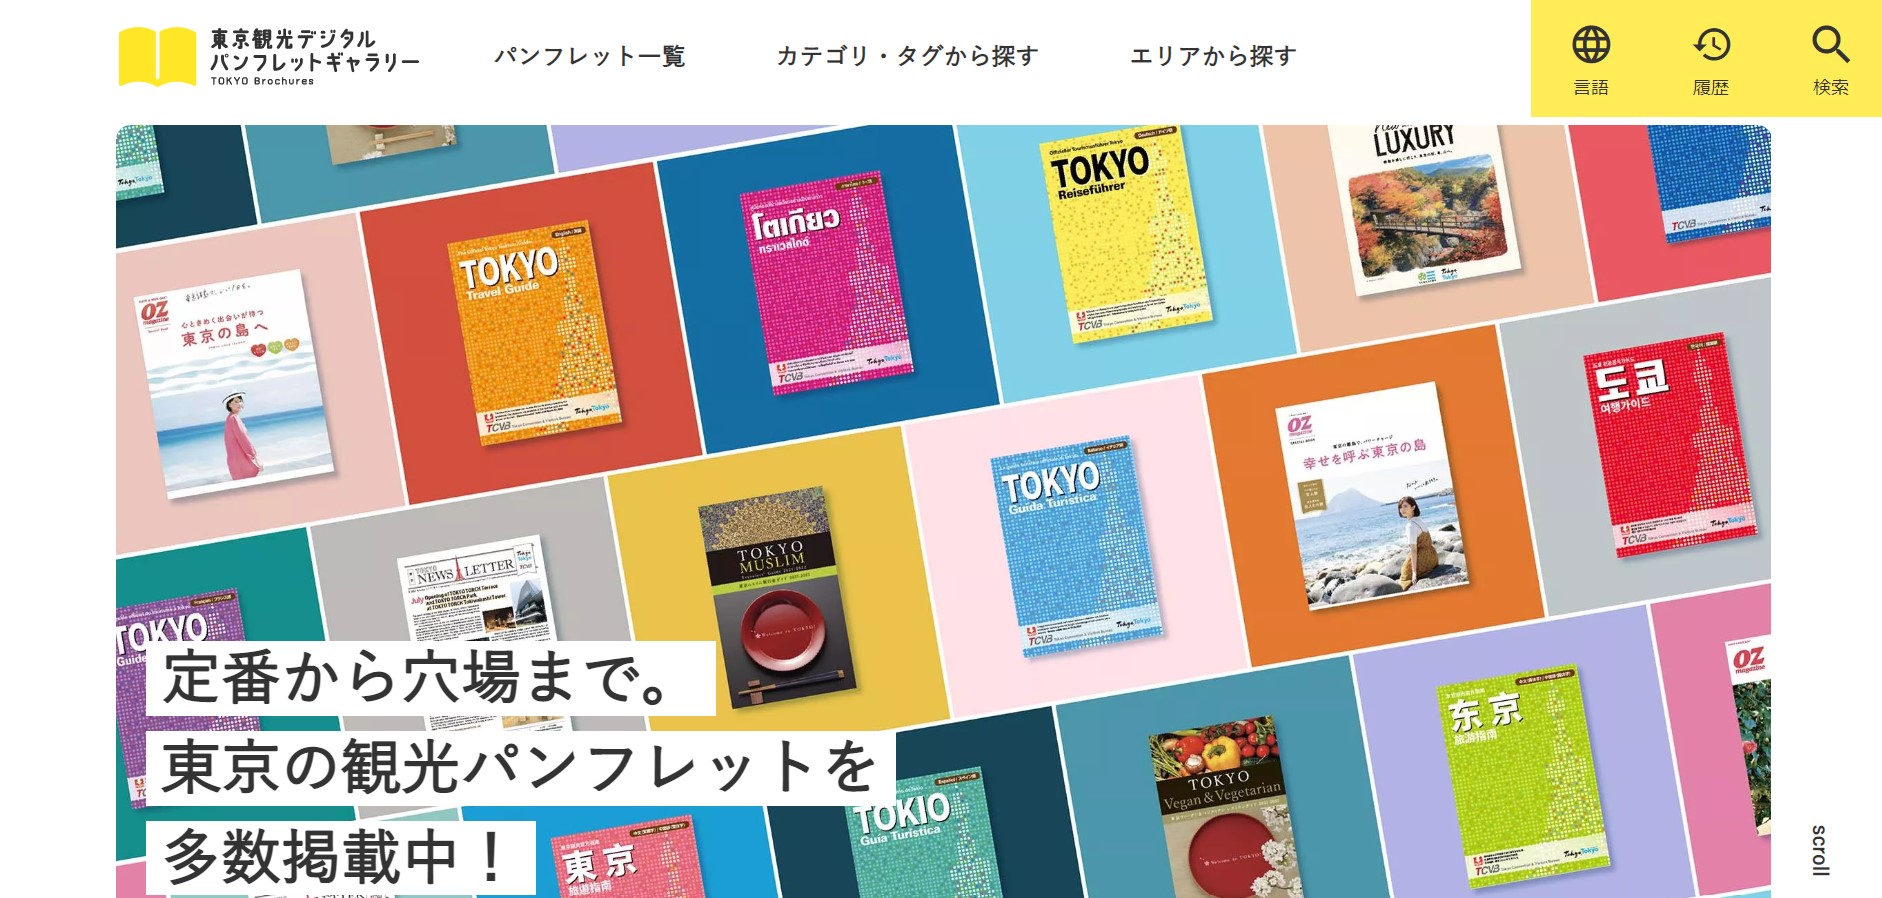 東京観光デジタルパンフレットギャラリー_キャプチャ